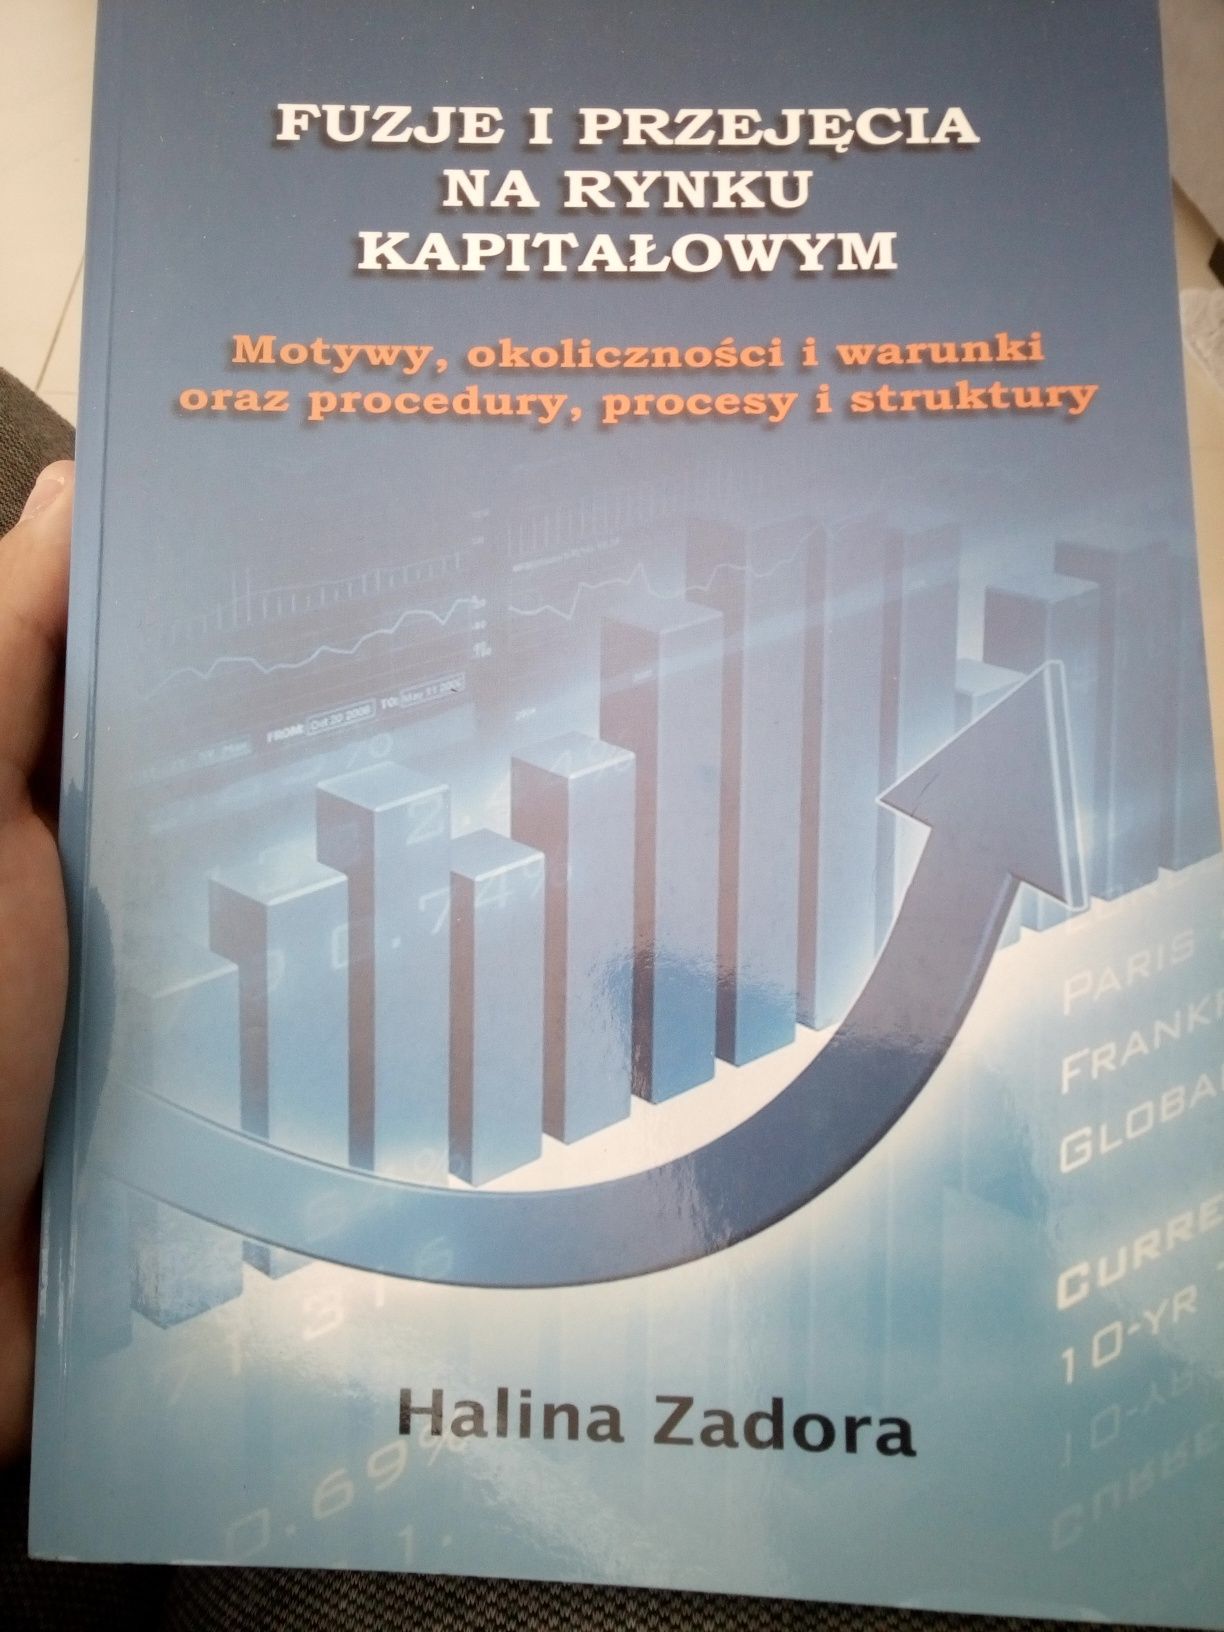 Fuzje i przejęcia na rynku kapitałowym - Halina Zadora